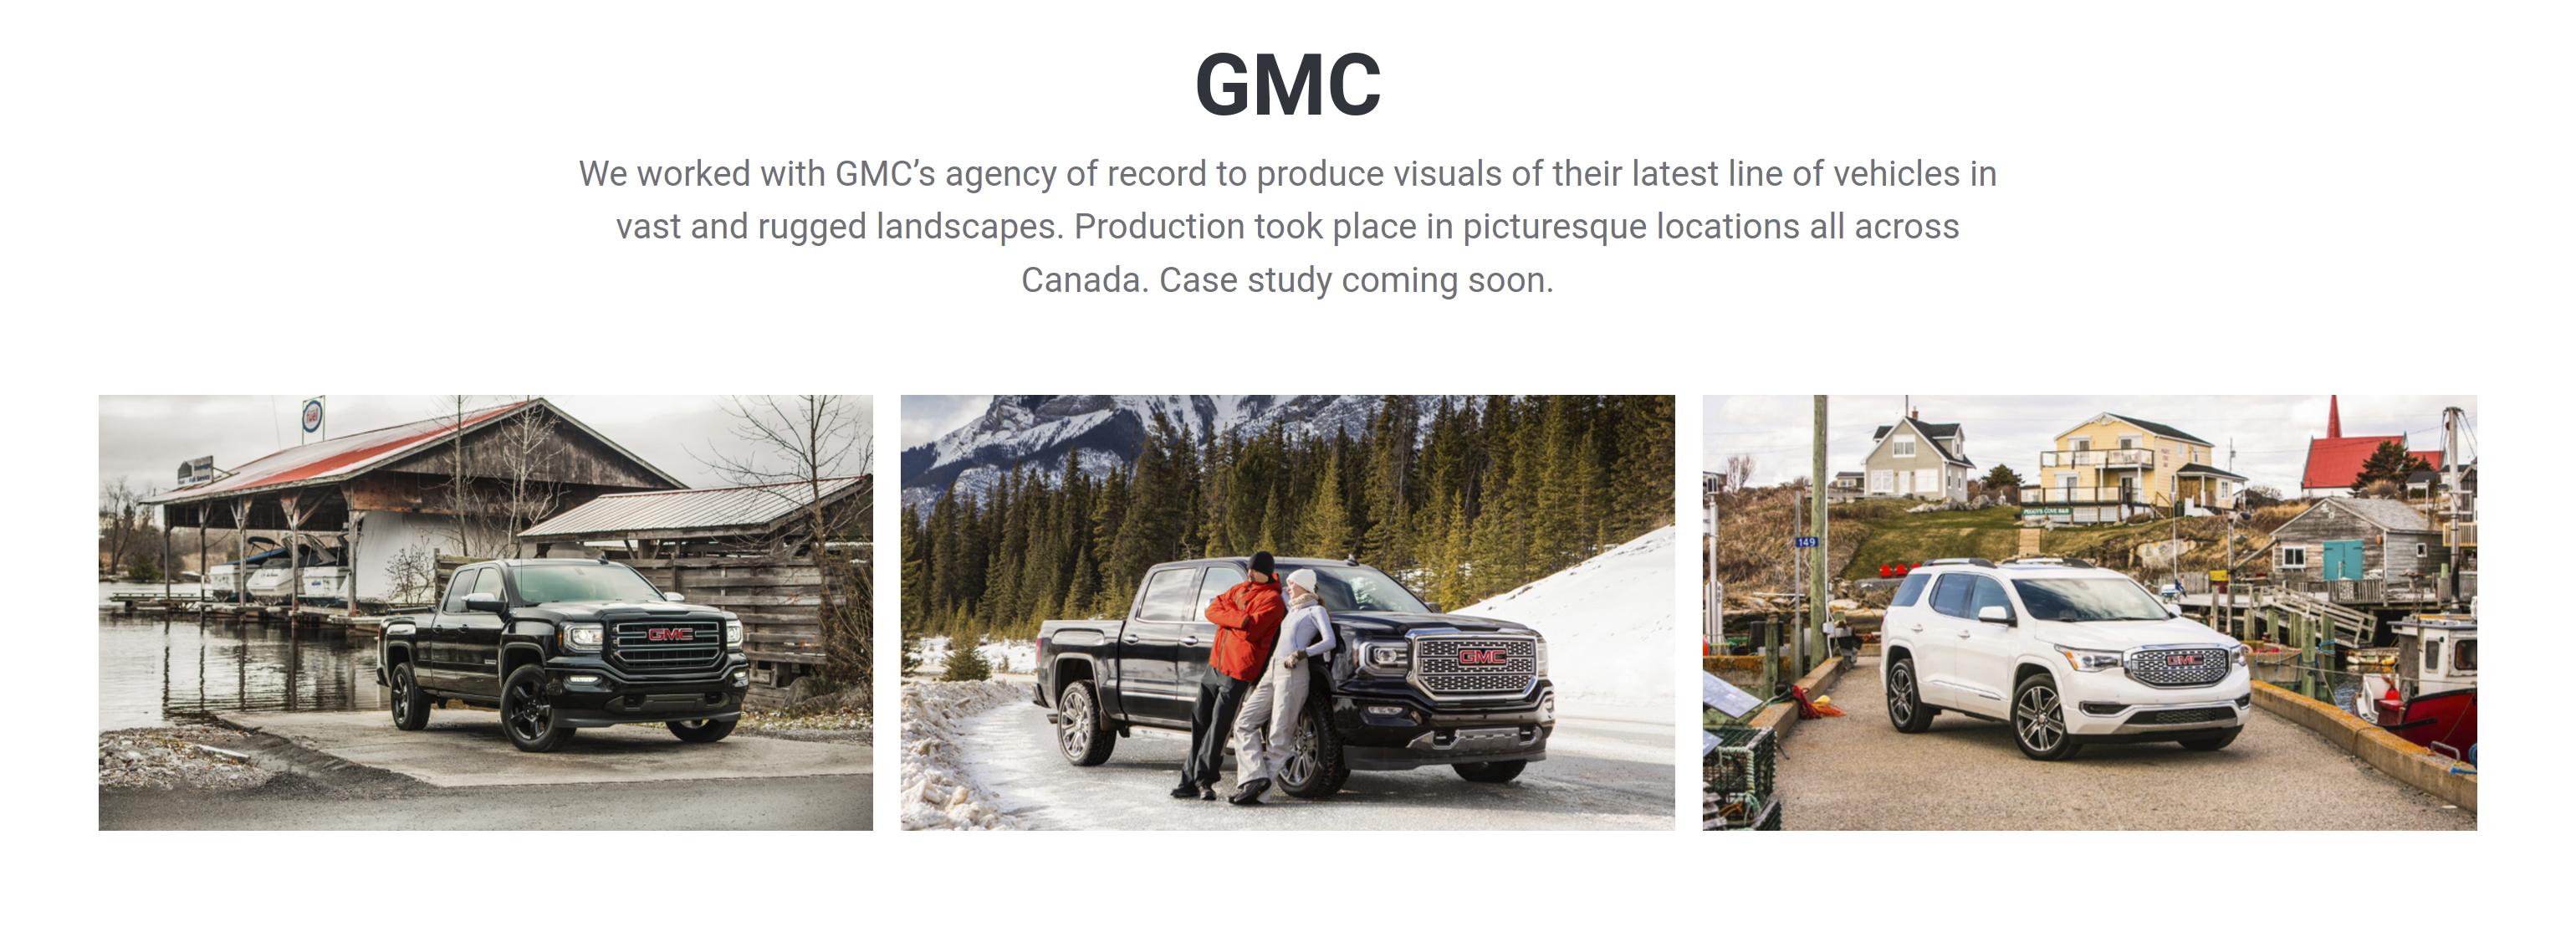 GMC brand storytelling